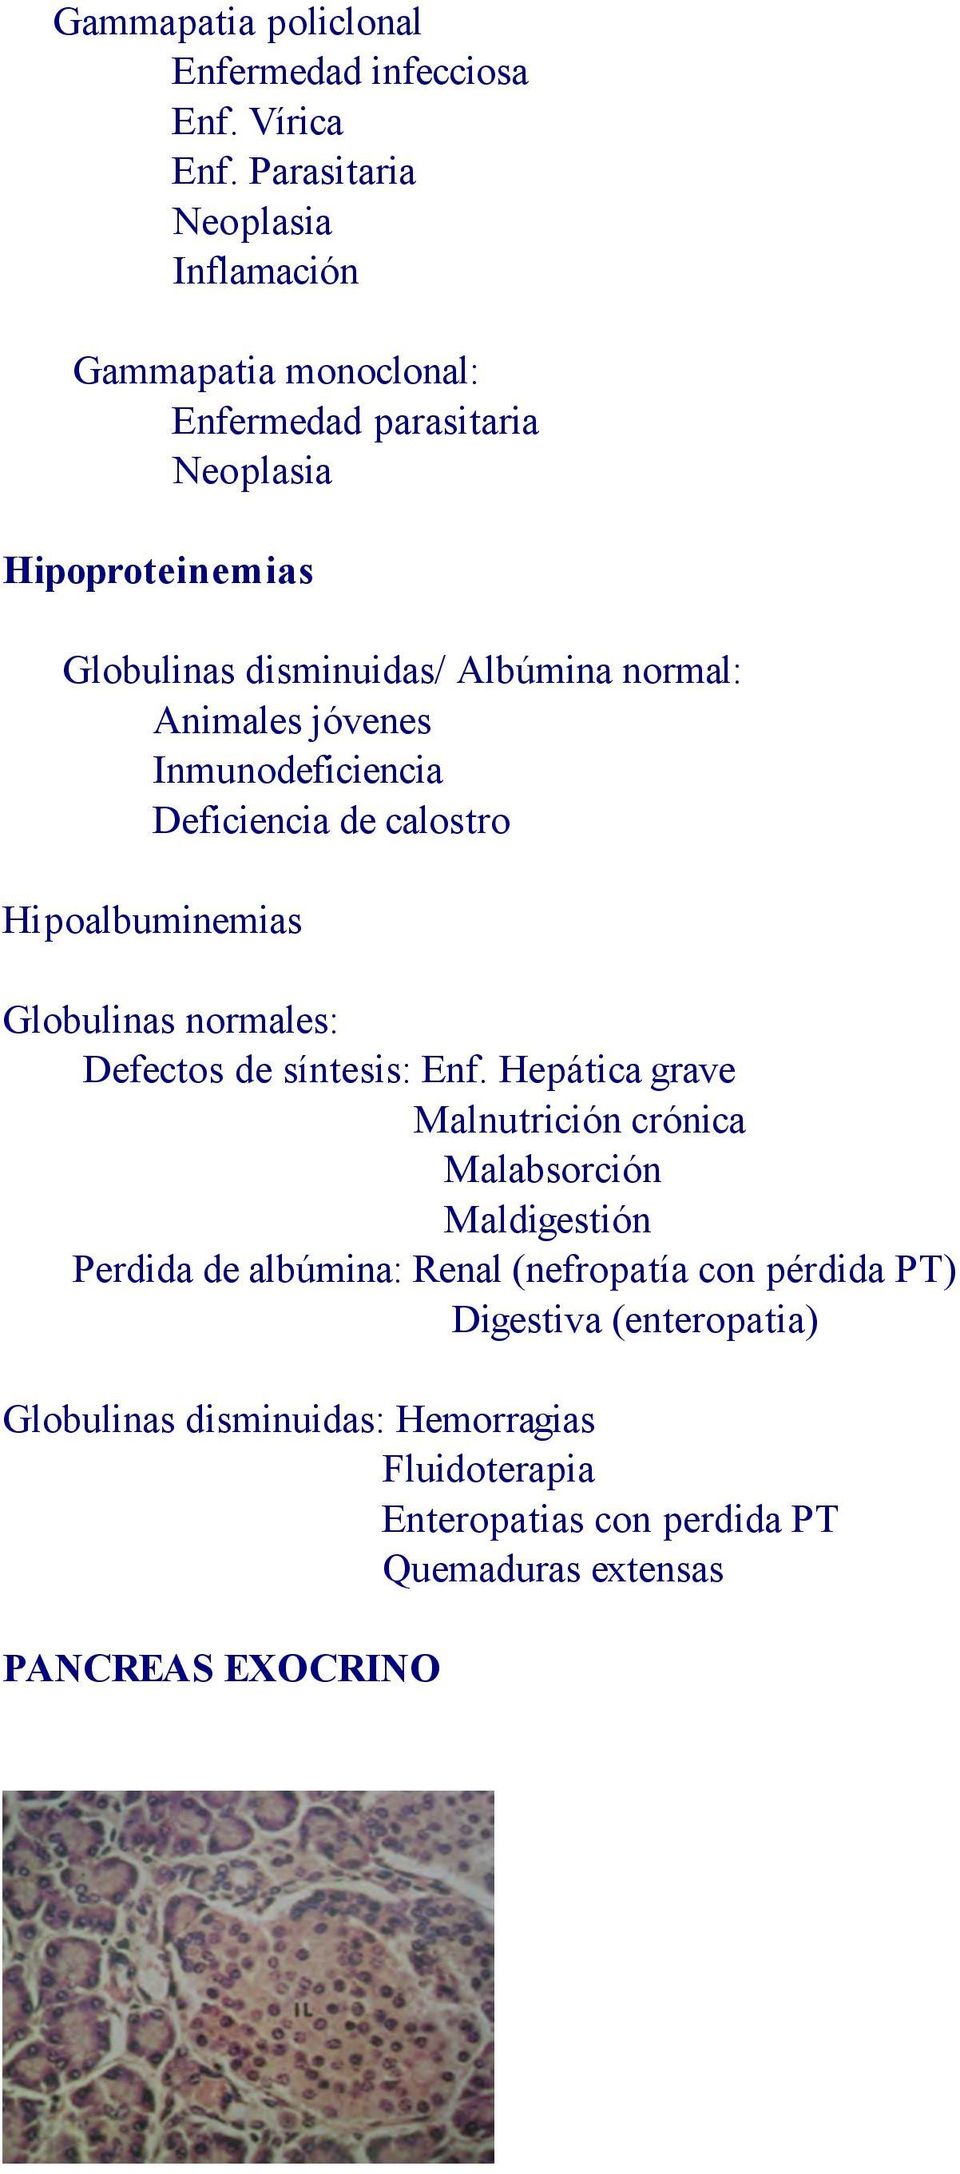 Animales jóvenes Inmunodeficiencia Deficiencia de calostro Hipoalbuminemias Globulinas normales: Defectos de síntesis: Enf.